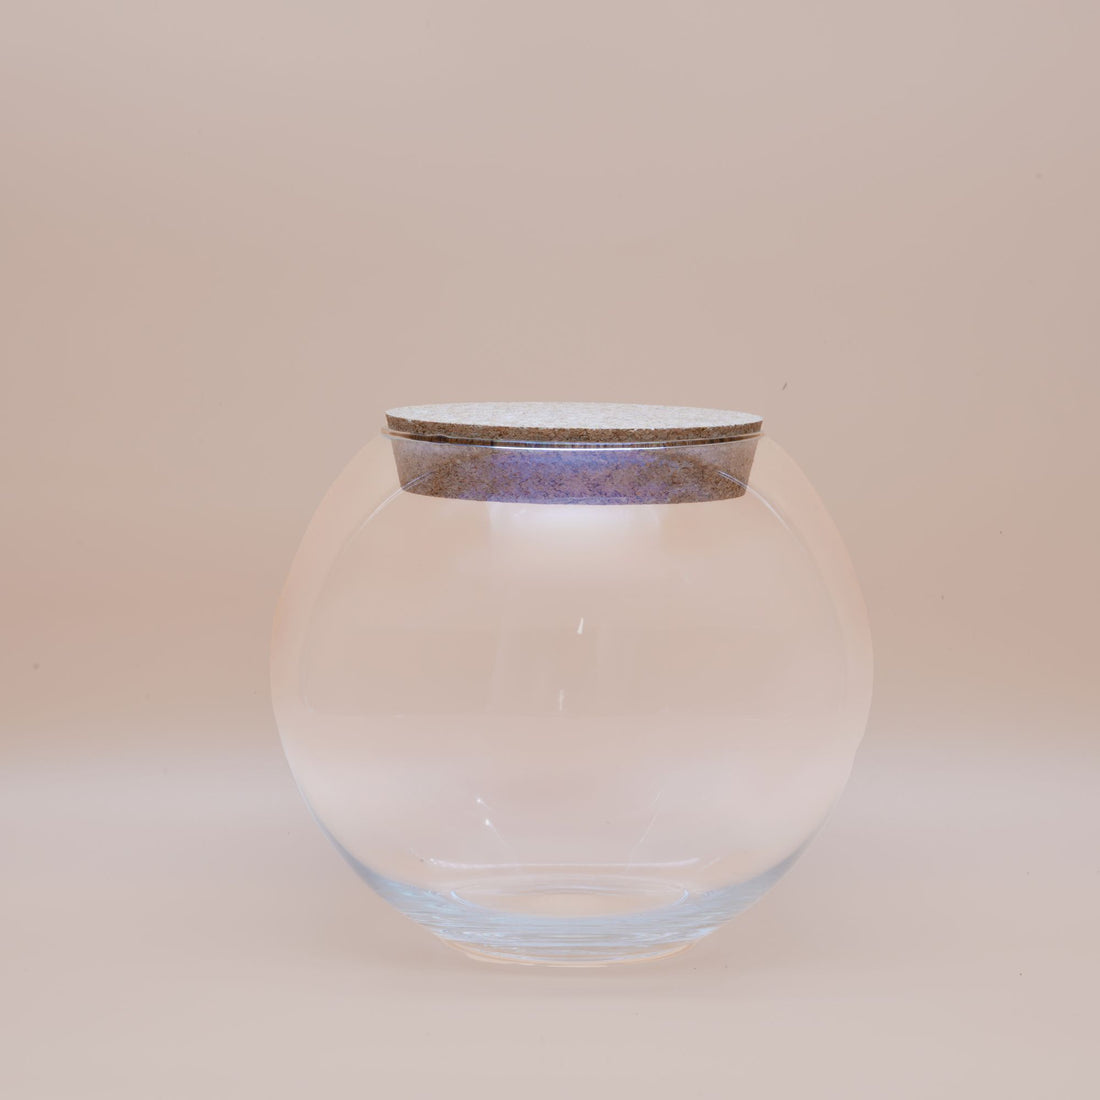 Fishbowl Terrarium Container ◦ Waterloo H: 21 cm